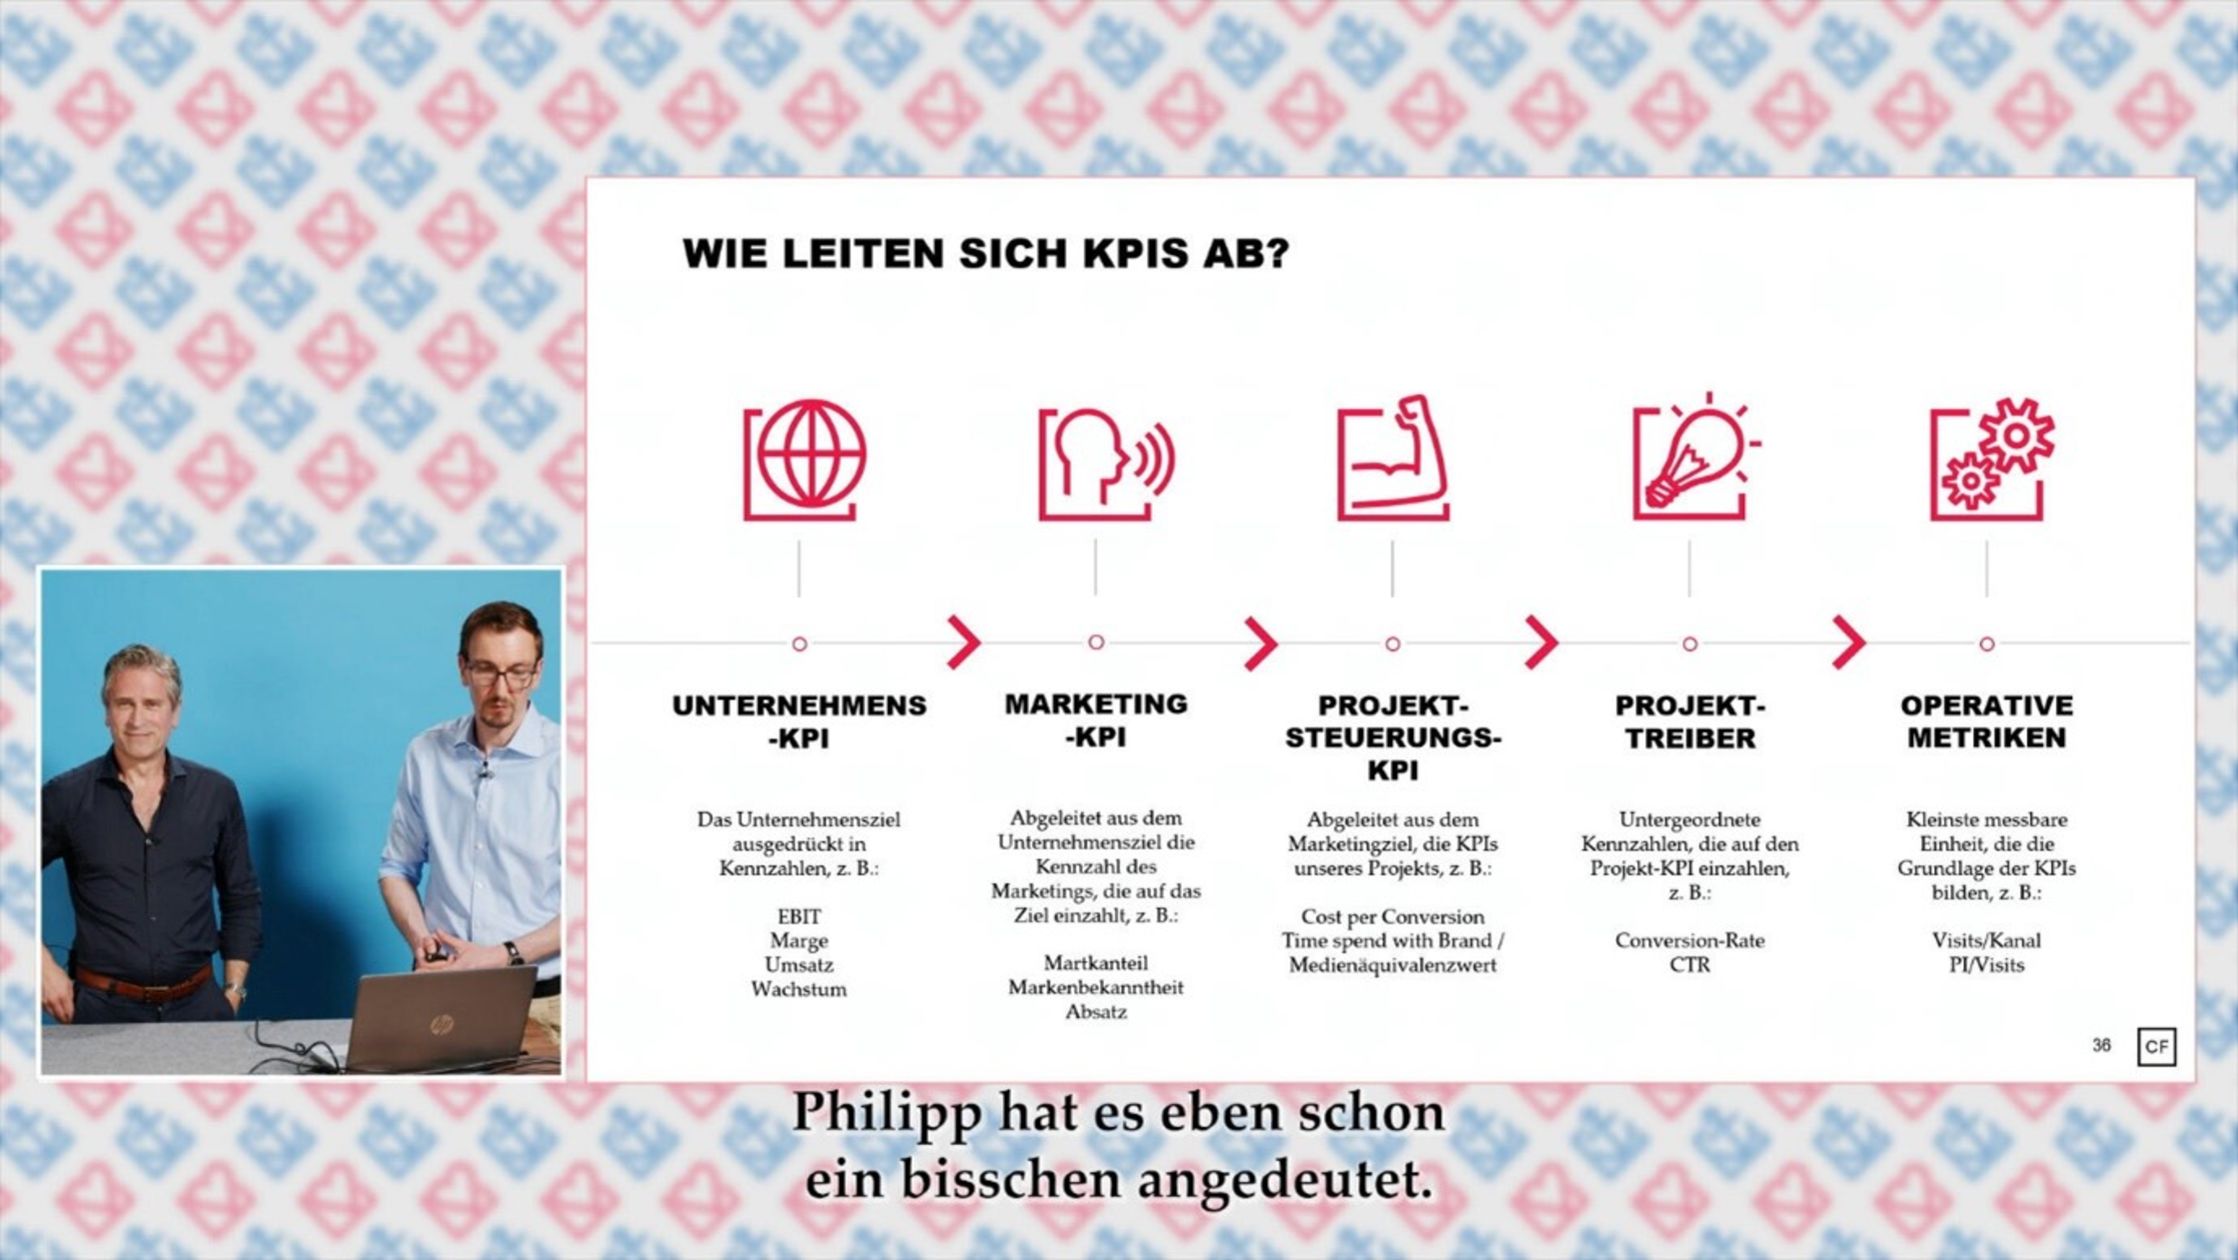 PowerPoint-Slide zum Thema „Wie leiten sich KPIs ab?“ Daneben im kleinen Fenster zwei Männer, Philip Dipner und Gerald Engel, in Business-Kleidung vor blauem Hintergrund. 